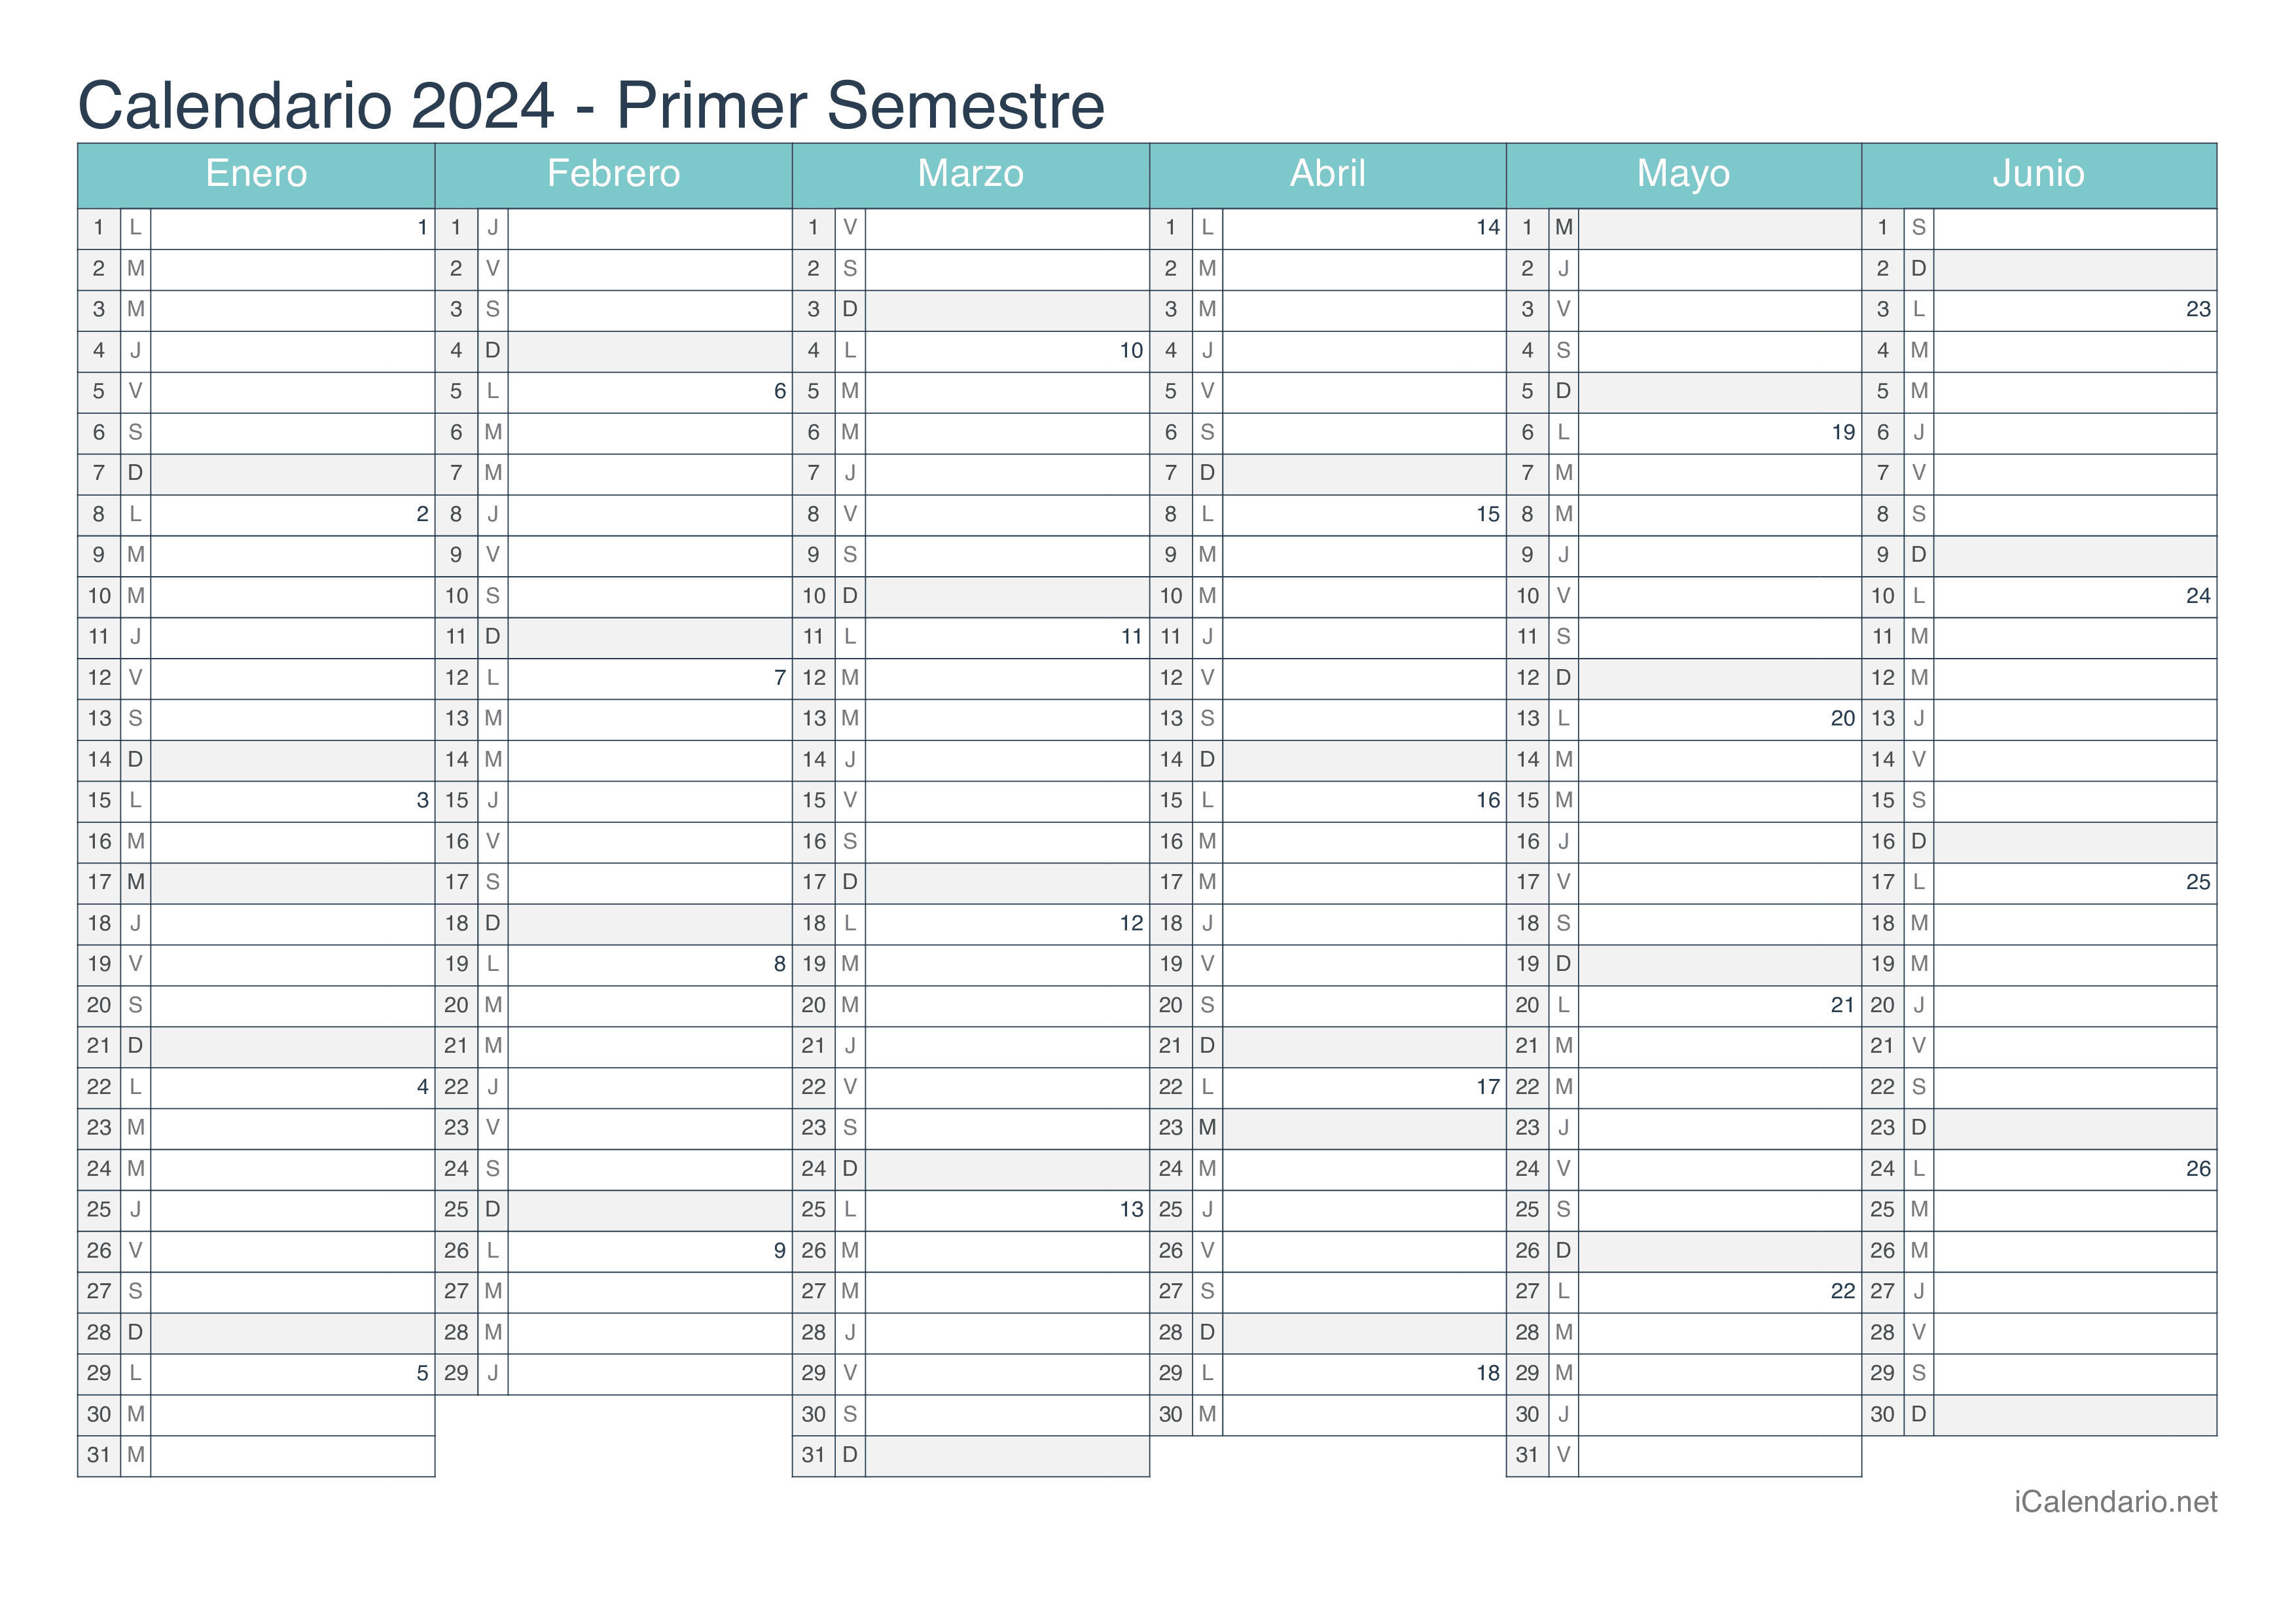 Calendario por semestre com números da semana 2024 - Turquesa